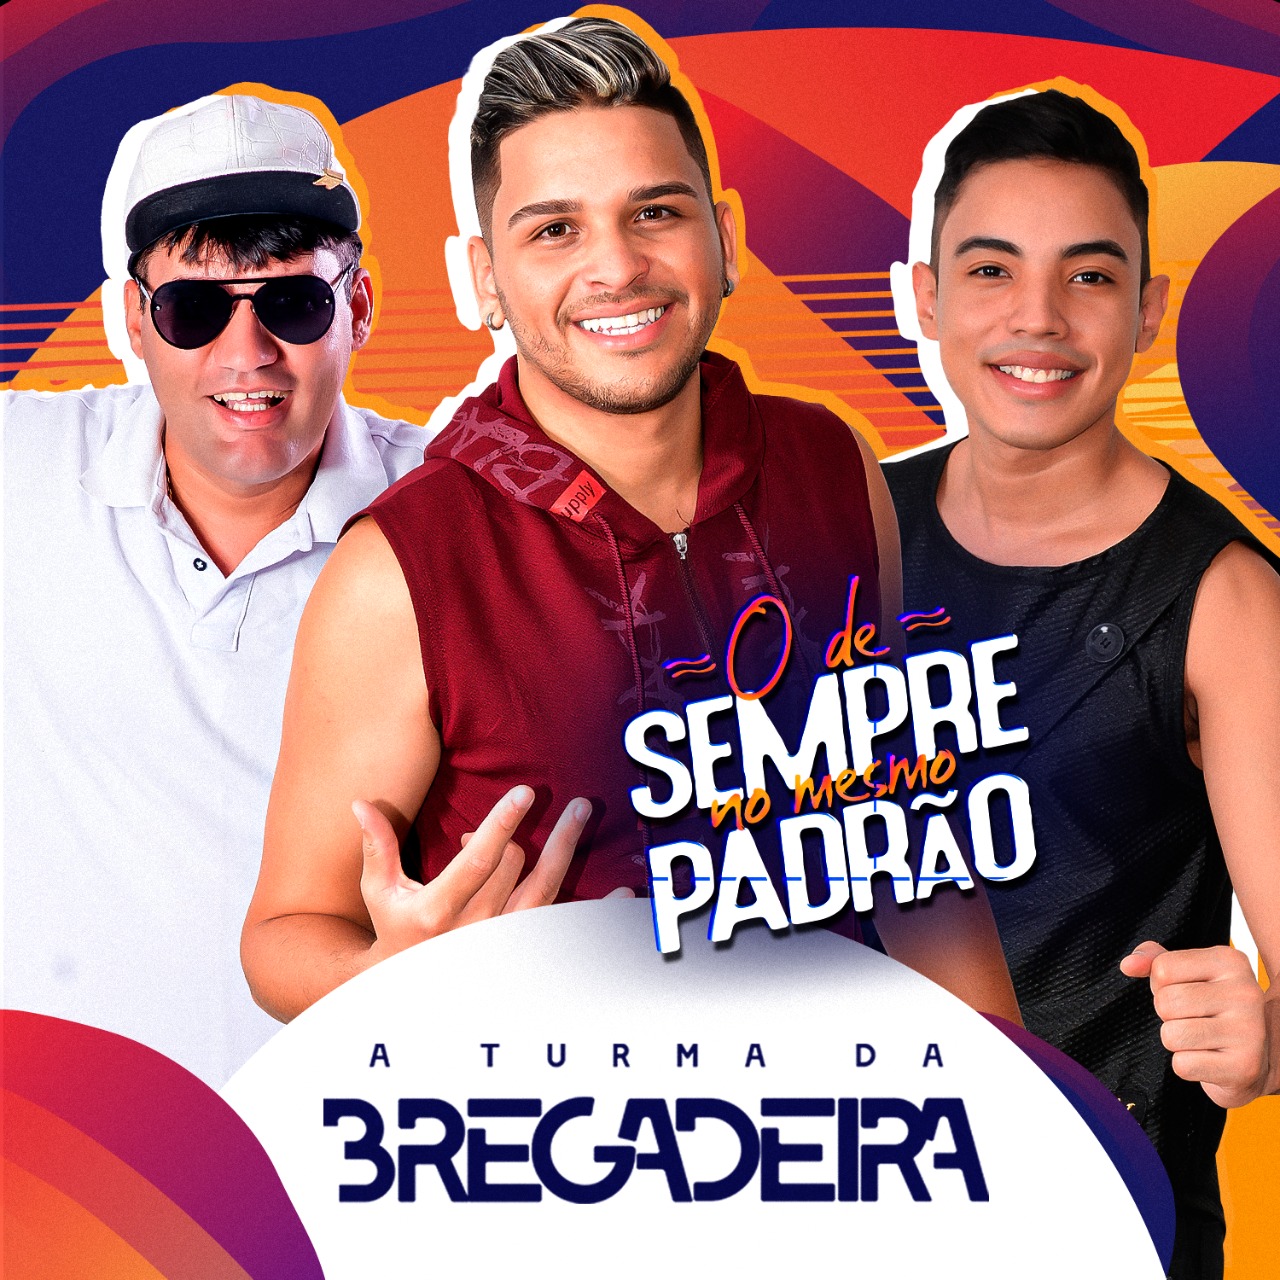 A TURMA DA BREGADEIRA - O DE SEMPRE NO MESMO PADRÃO - CD 2021.2